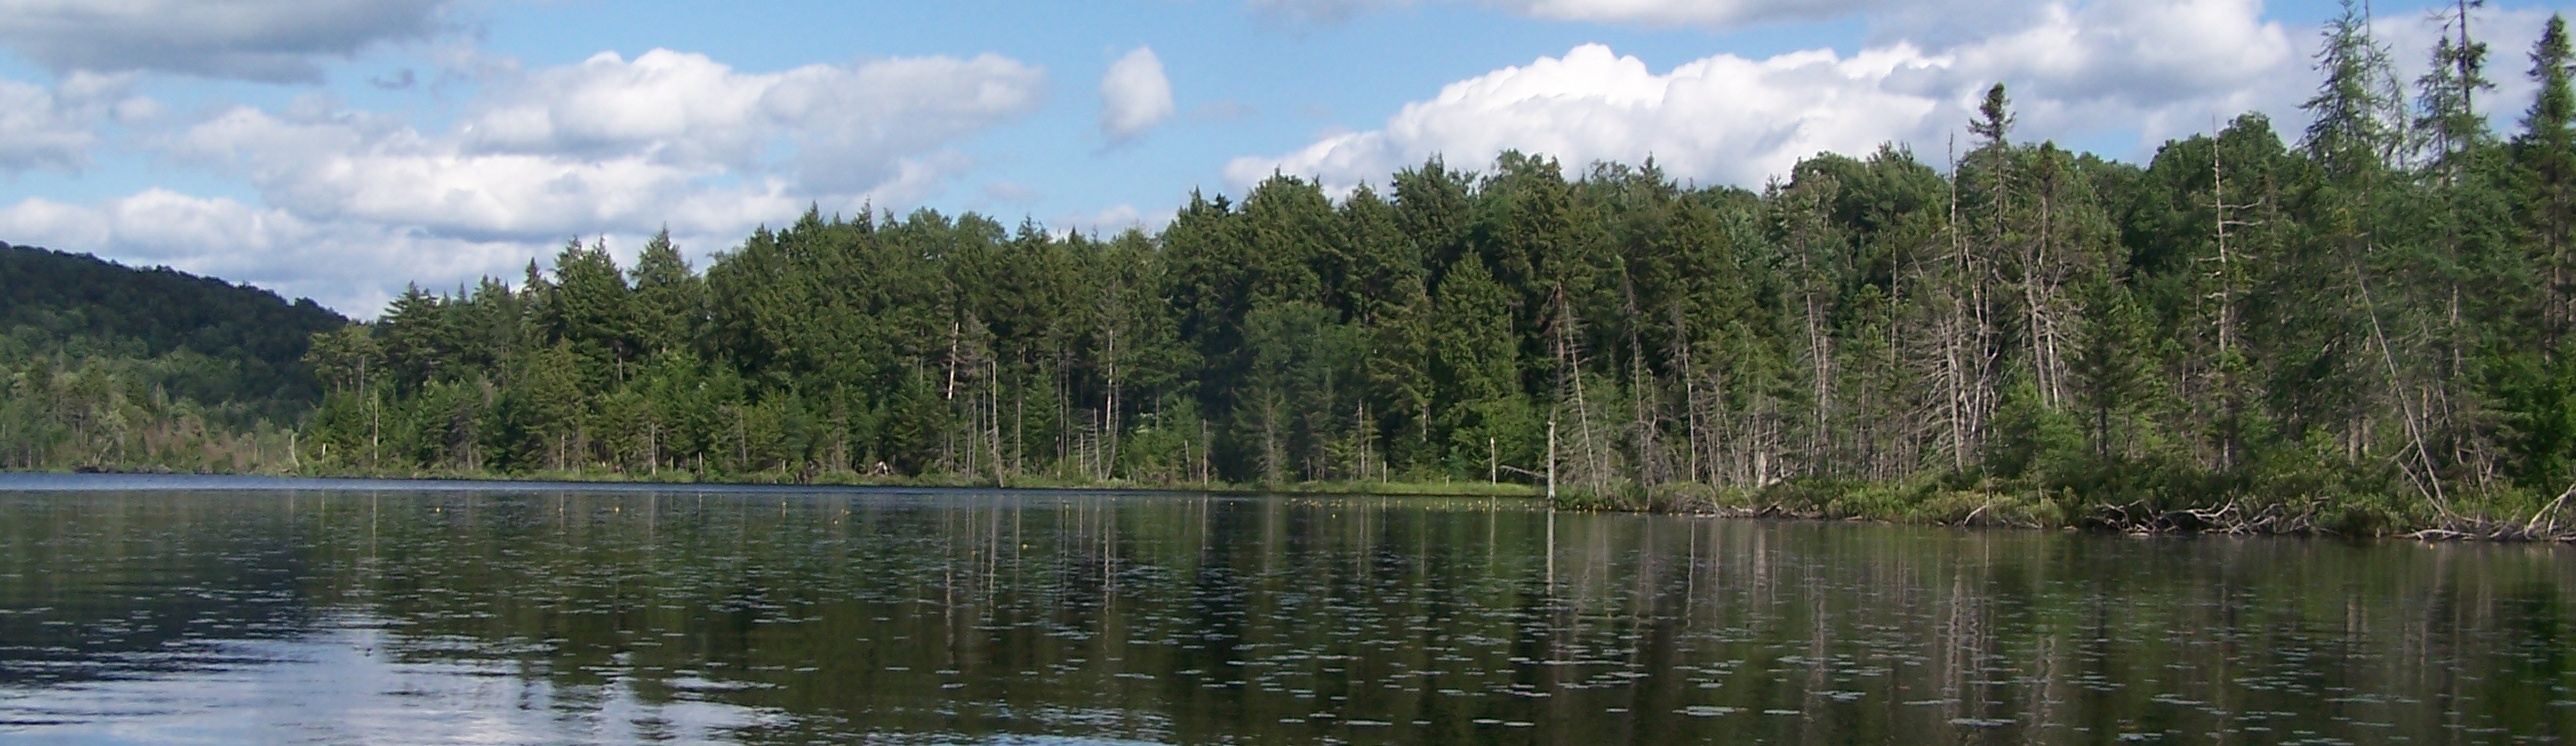 Aldrich Pond Wild Forest